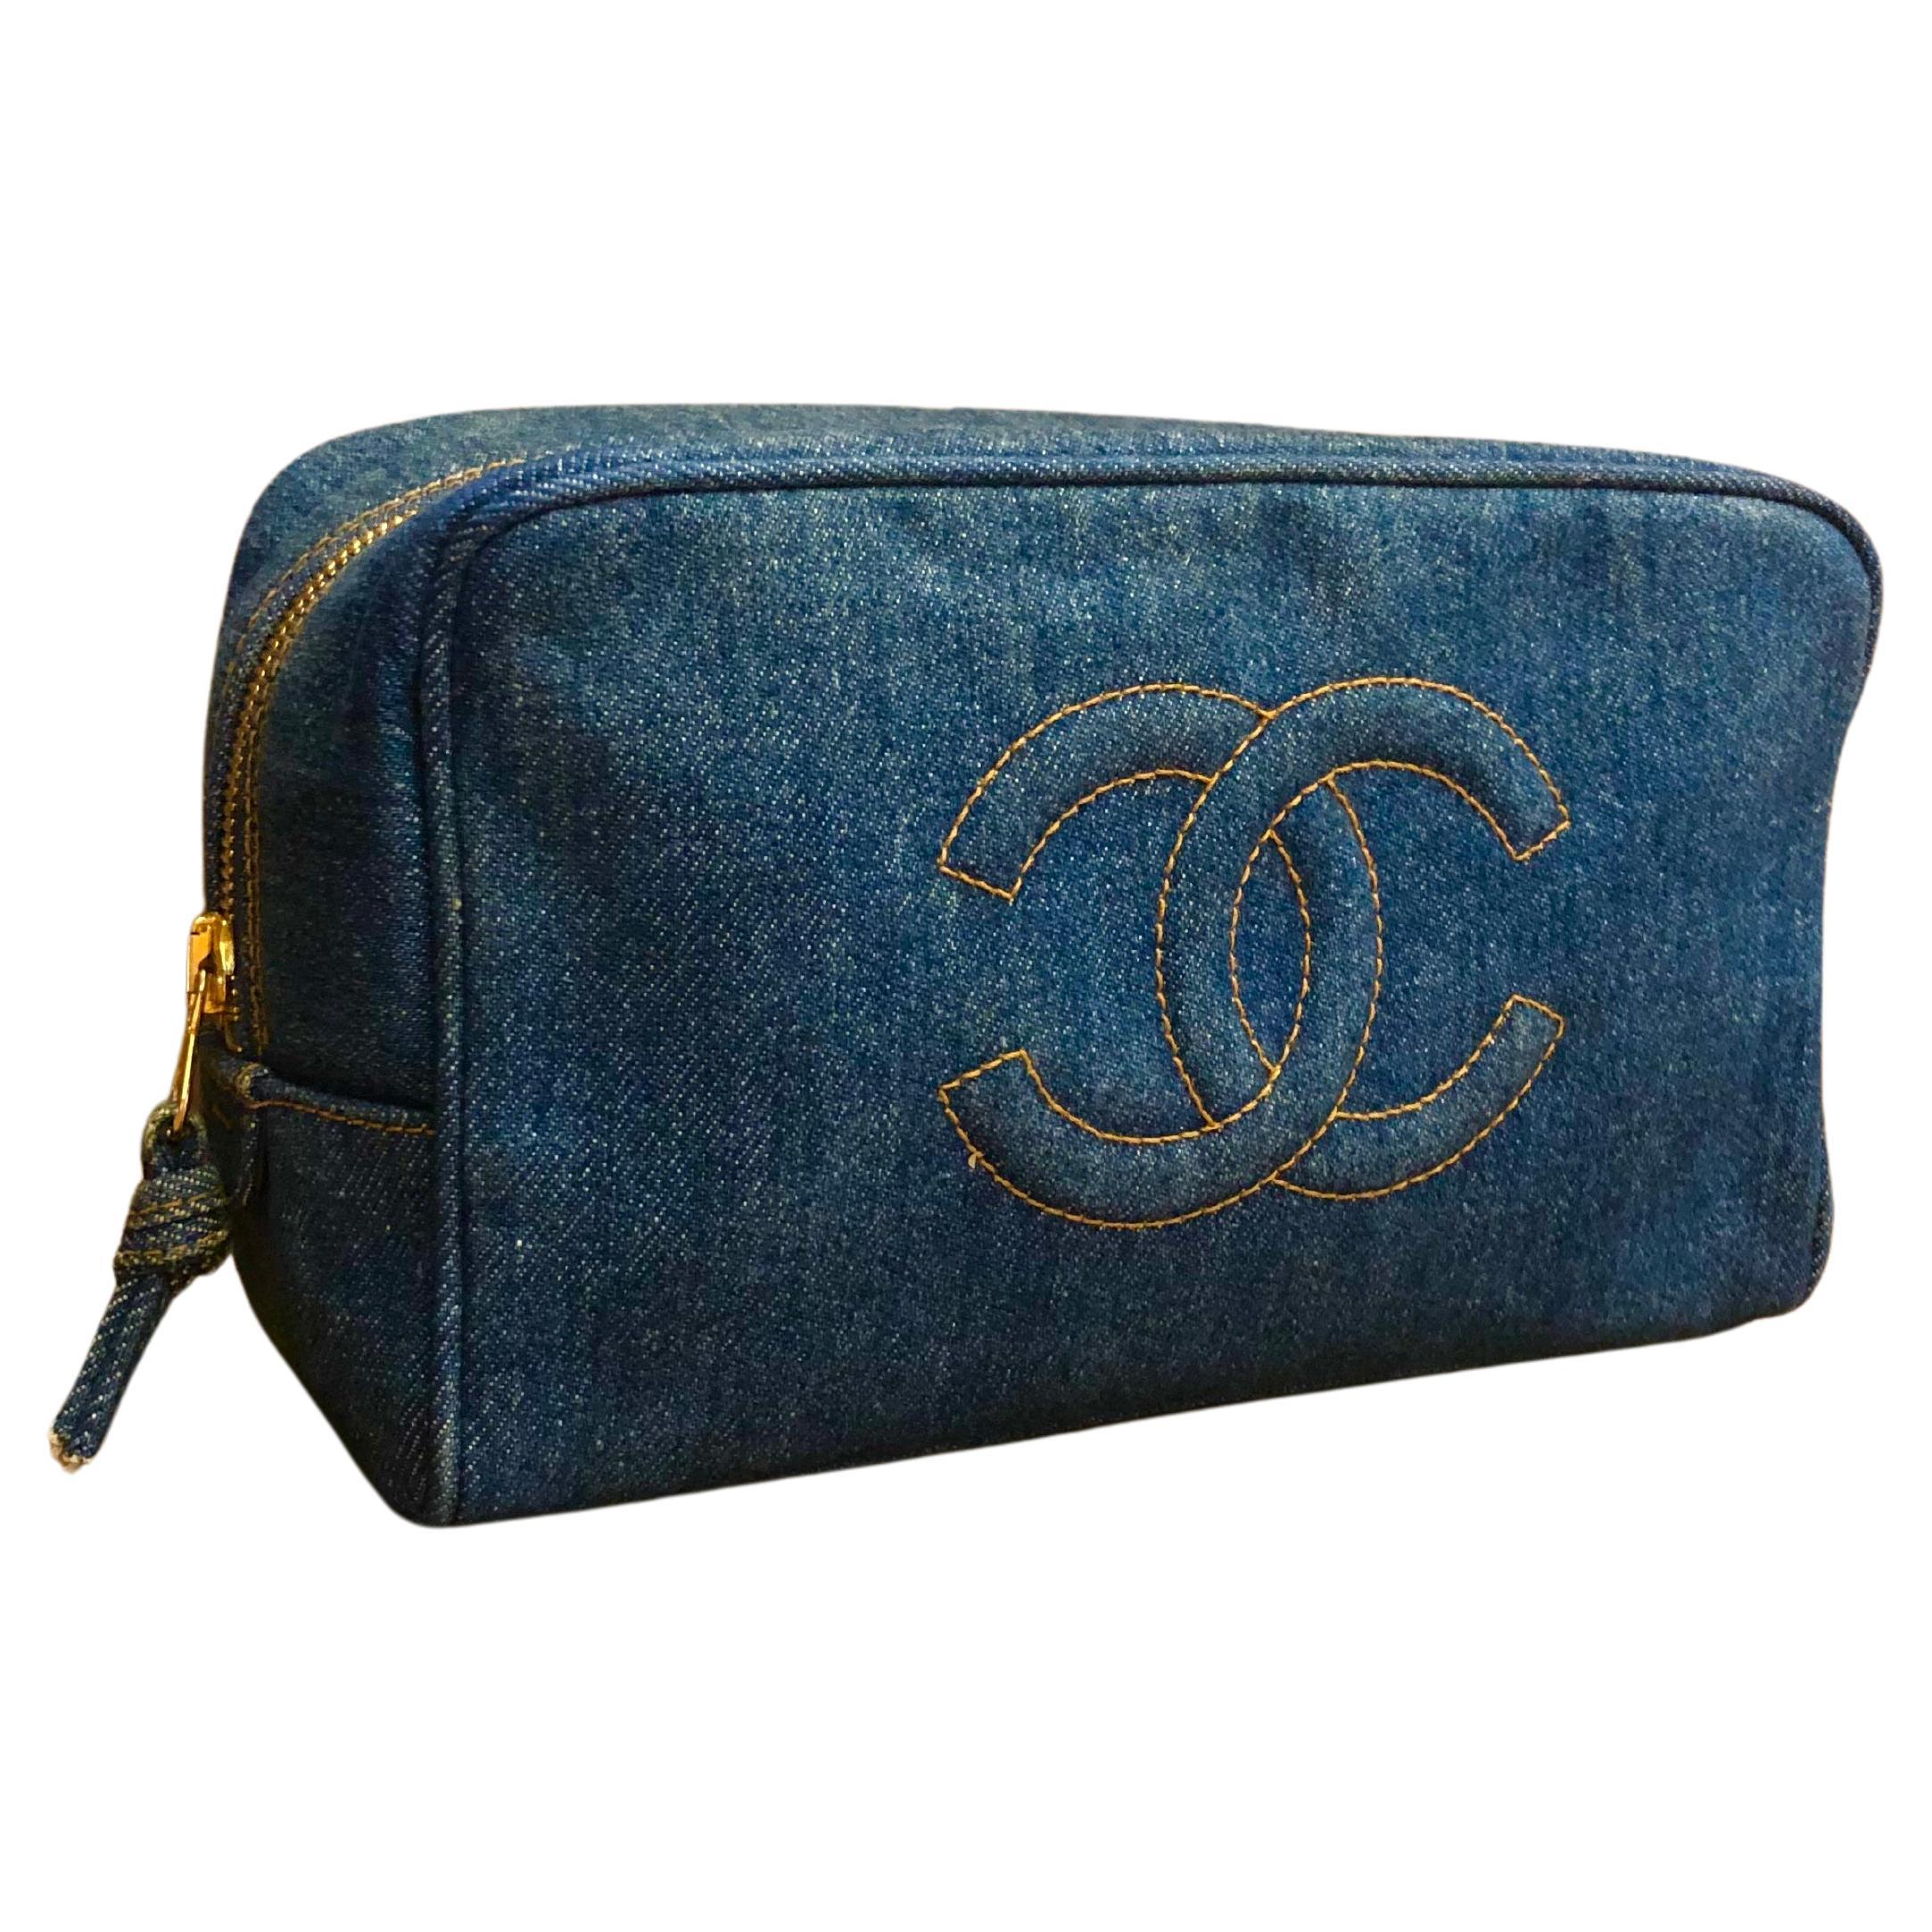 Chanel Makeup Case Bag - 2 For Sale on 1stDibs